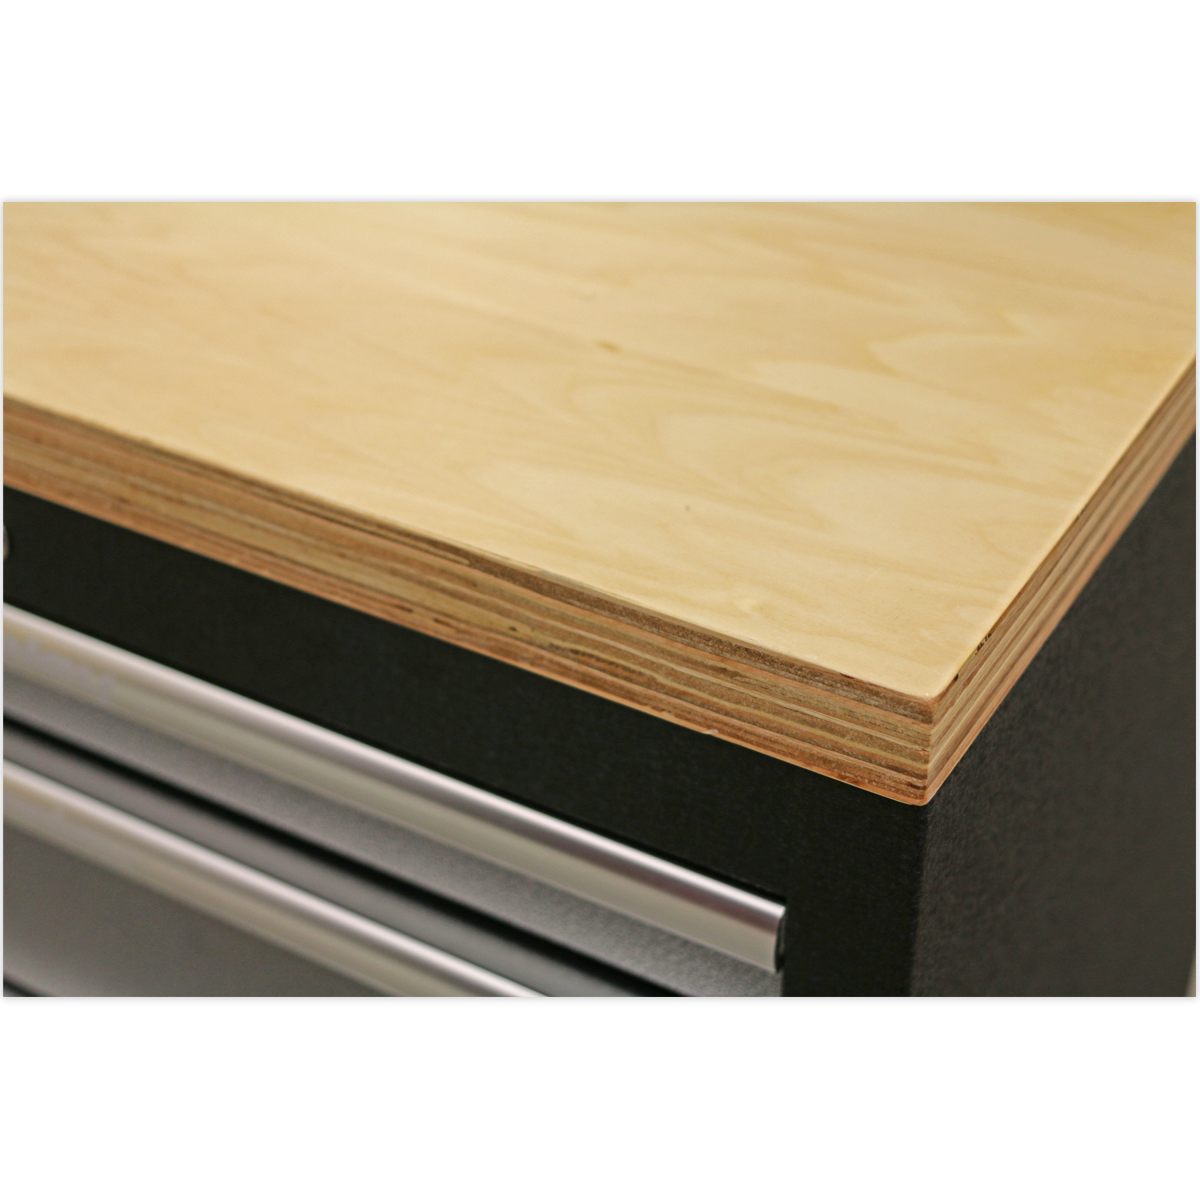 Pressed Wood Worktop 1360mm